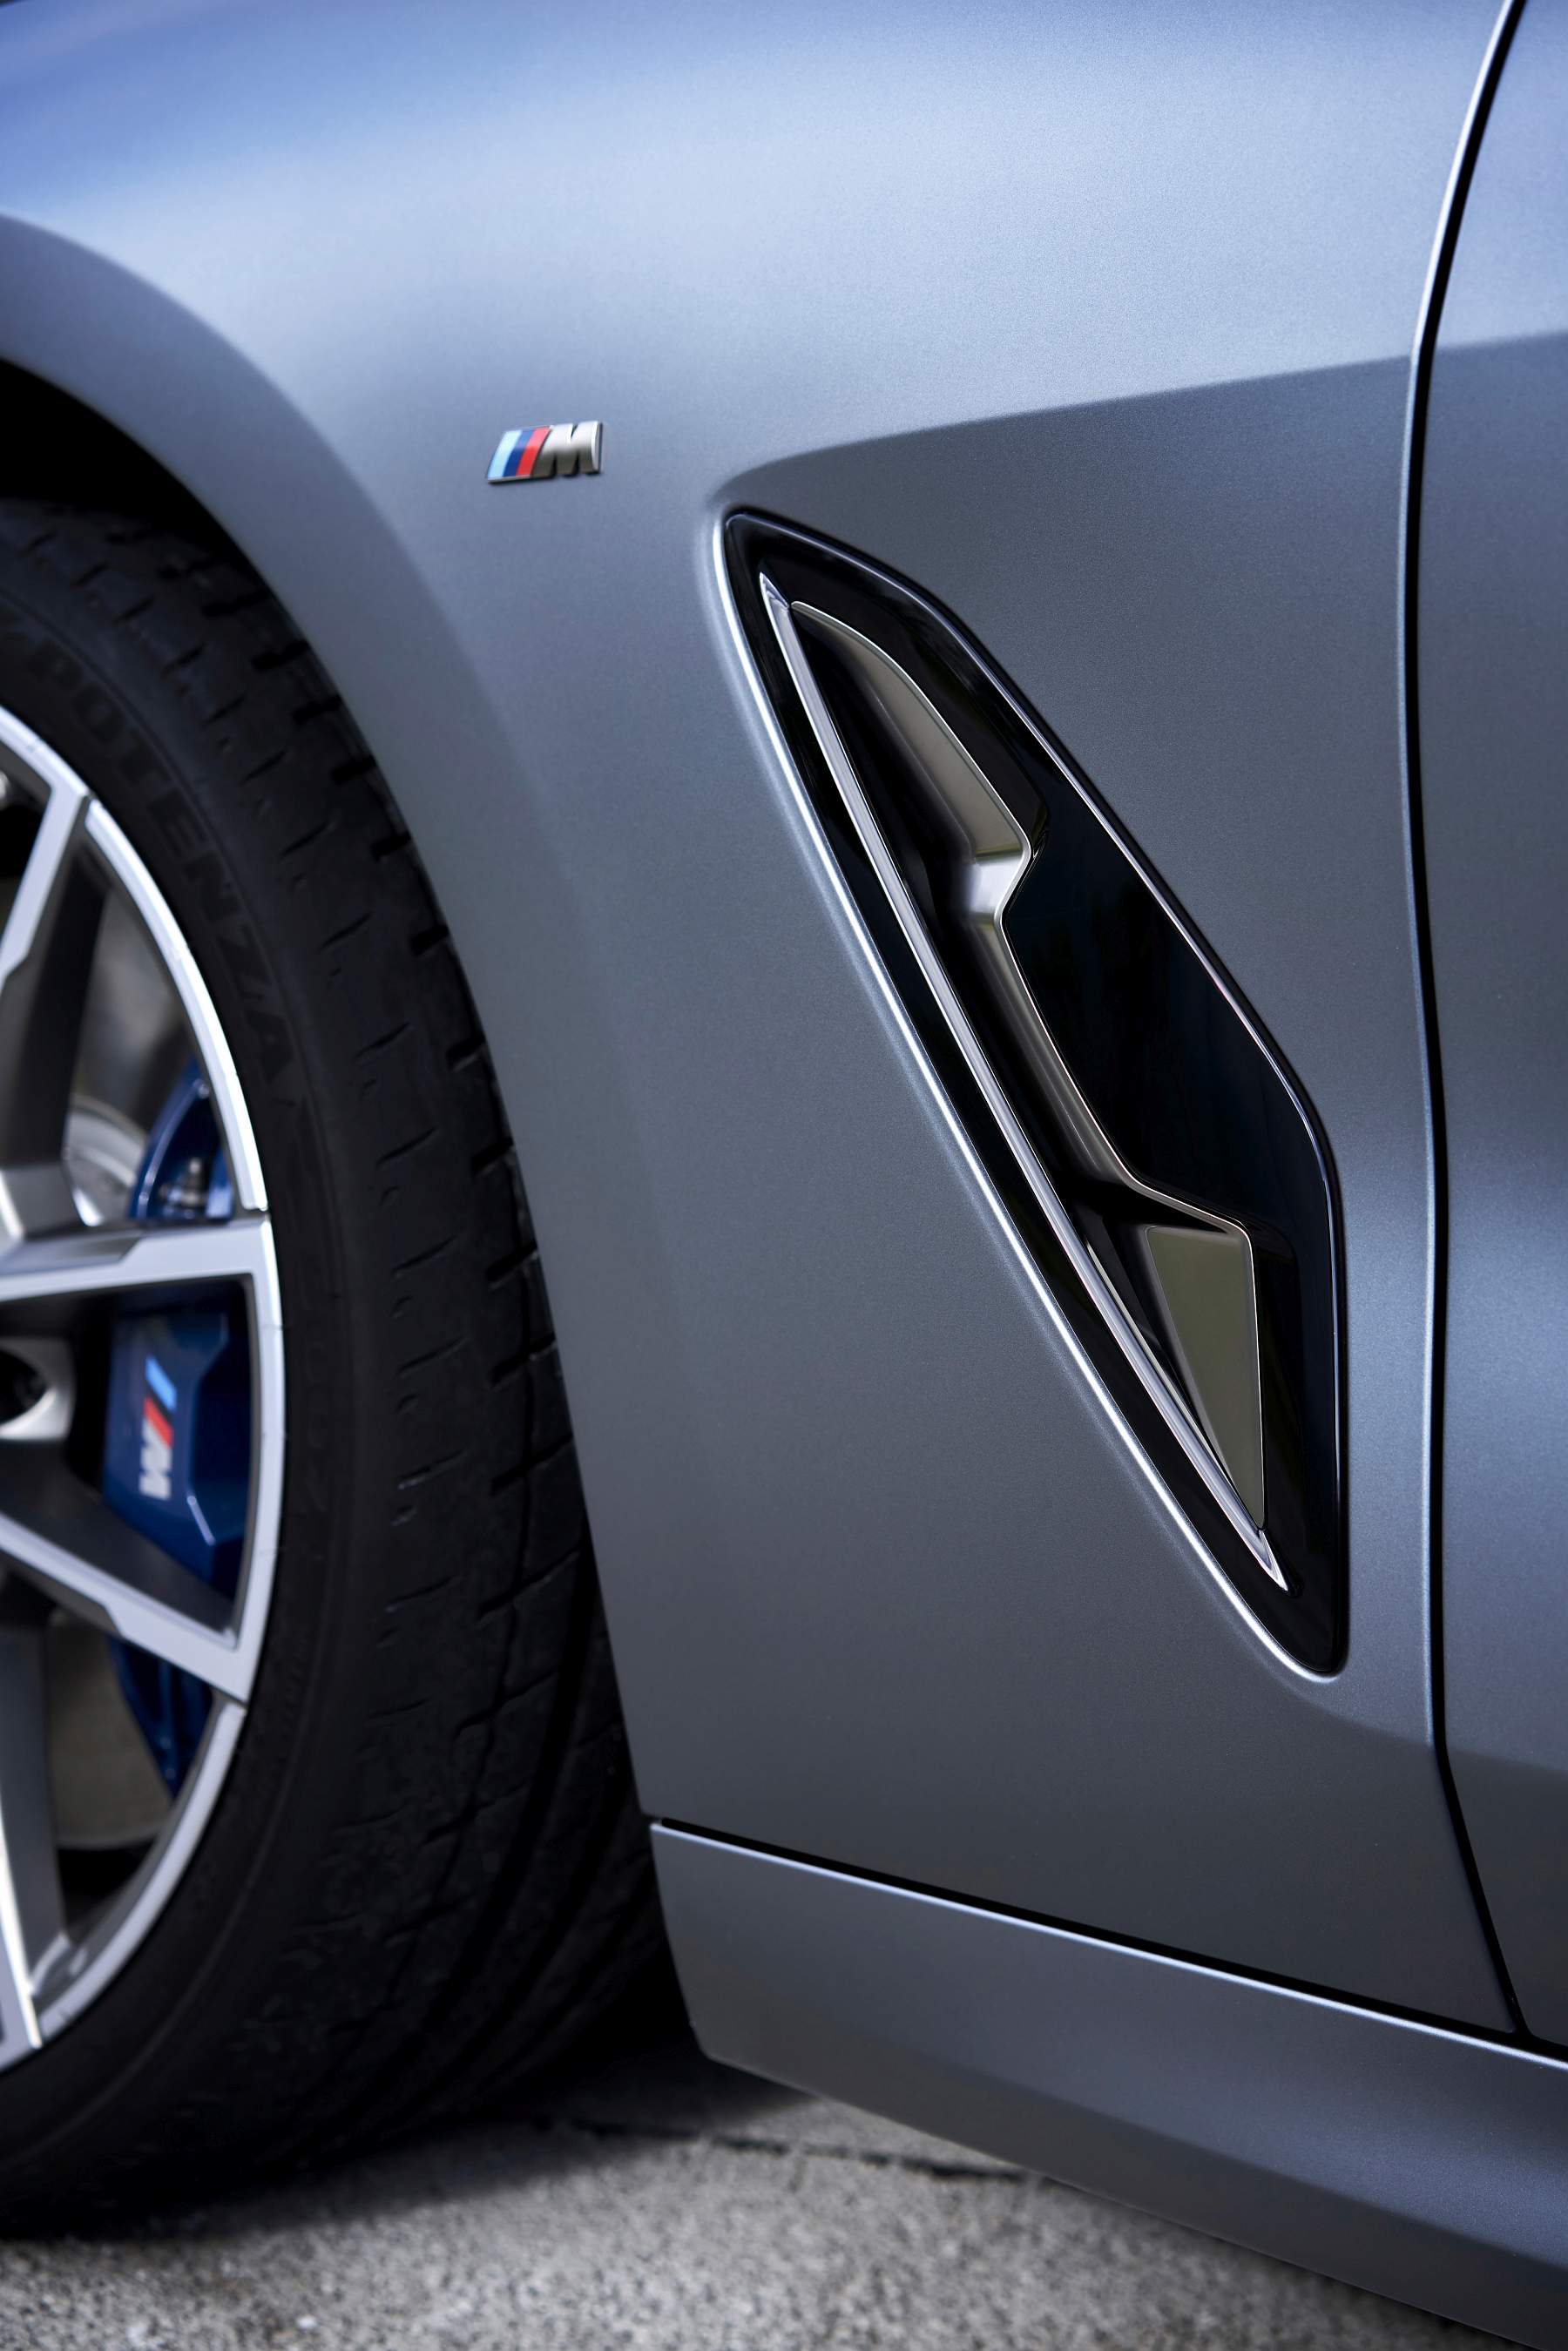 BMW Série 8 Gran Coupe oficiais 2019 (45)